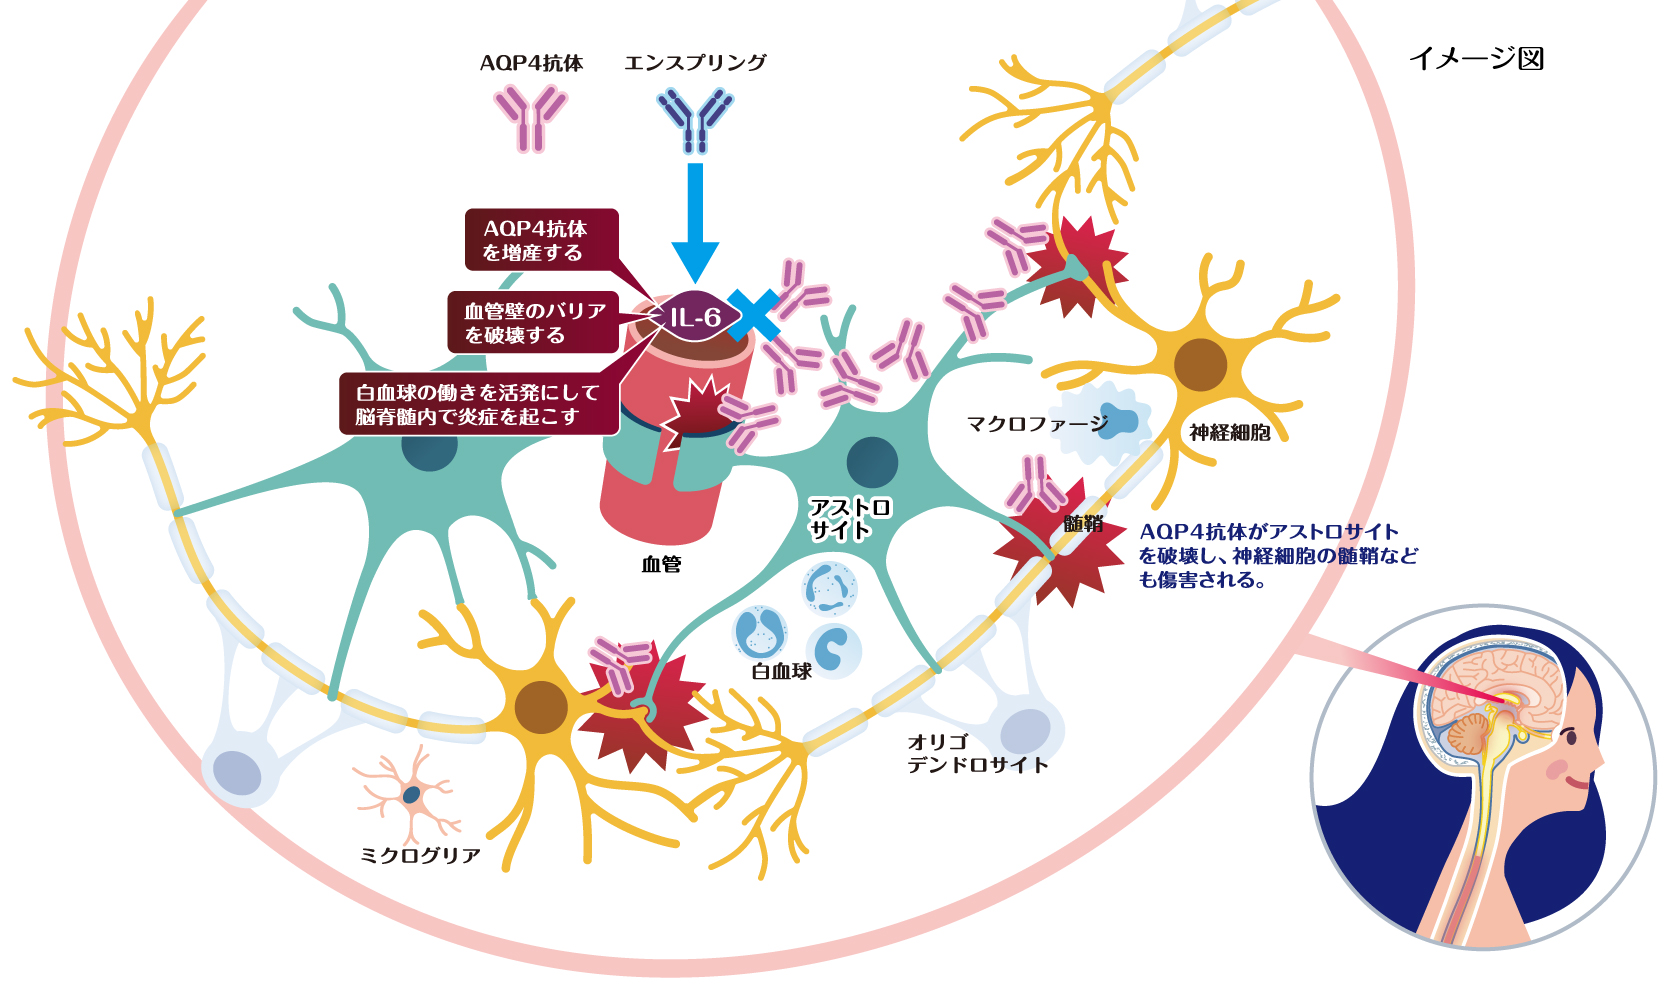 NMOSD病態へのIL-6の影響とエンスプリングの作用をイメージした図。AQP4抗体・エンスプリング、AQP4抗体を増産する、血管壁のバリアを破壊する、白血球の働きを活発にして脳脊髄内で炎症を起こす。IL-6・血管・ミクログリア・アストロサイト・白血球・オリゴデンドロサイト・マクロファージ・髄鞘・神経細胞。AQP4抗体がアストロサイトを破壊し、神経細胞の髄鞘なども傷害される。